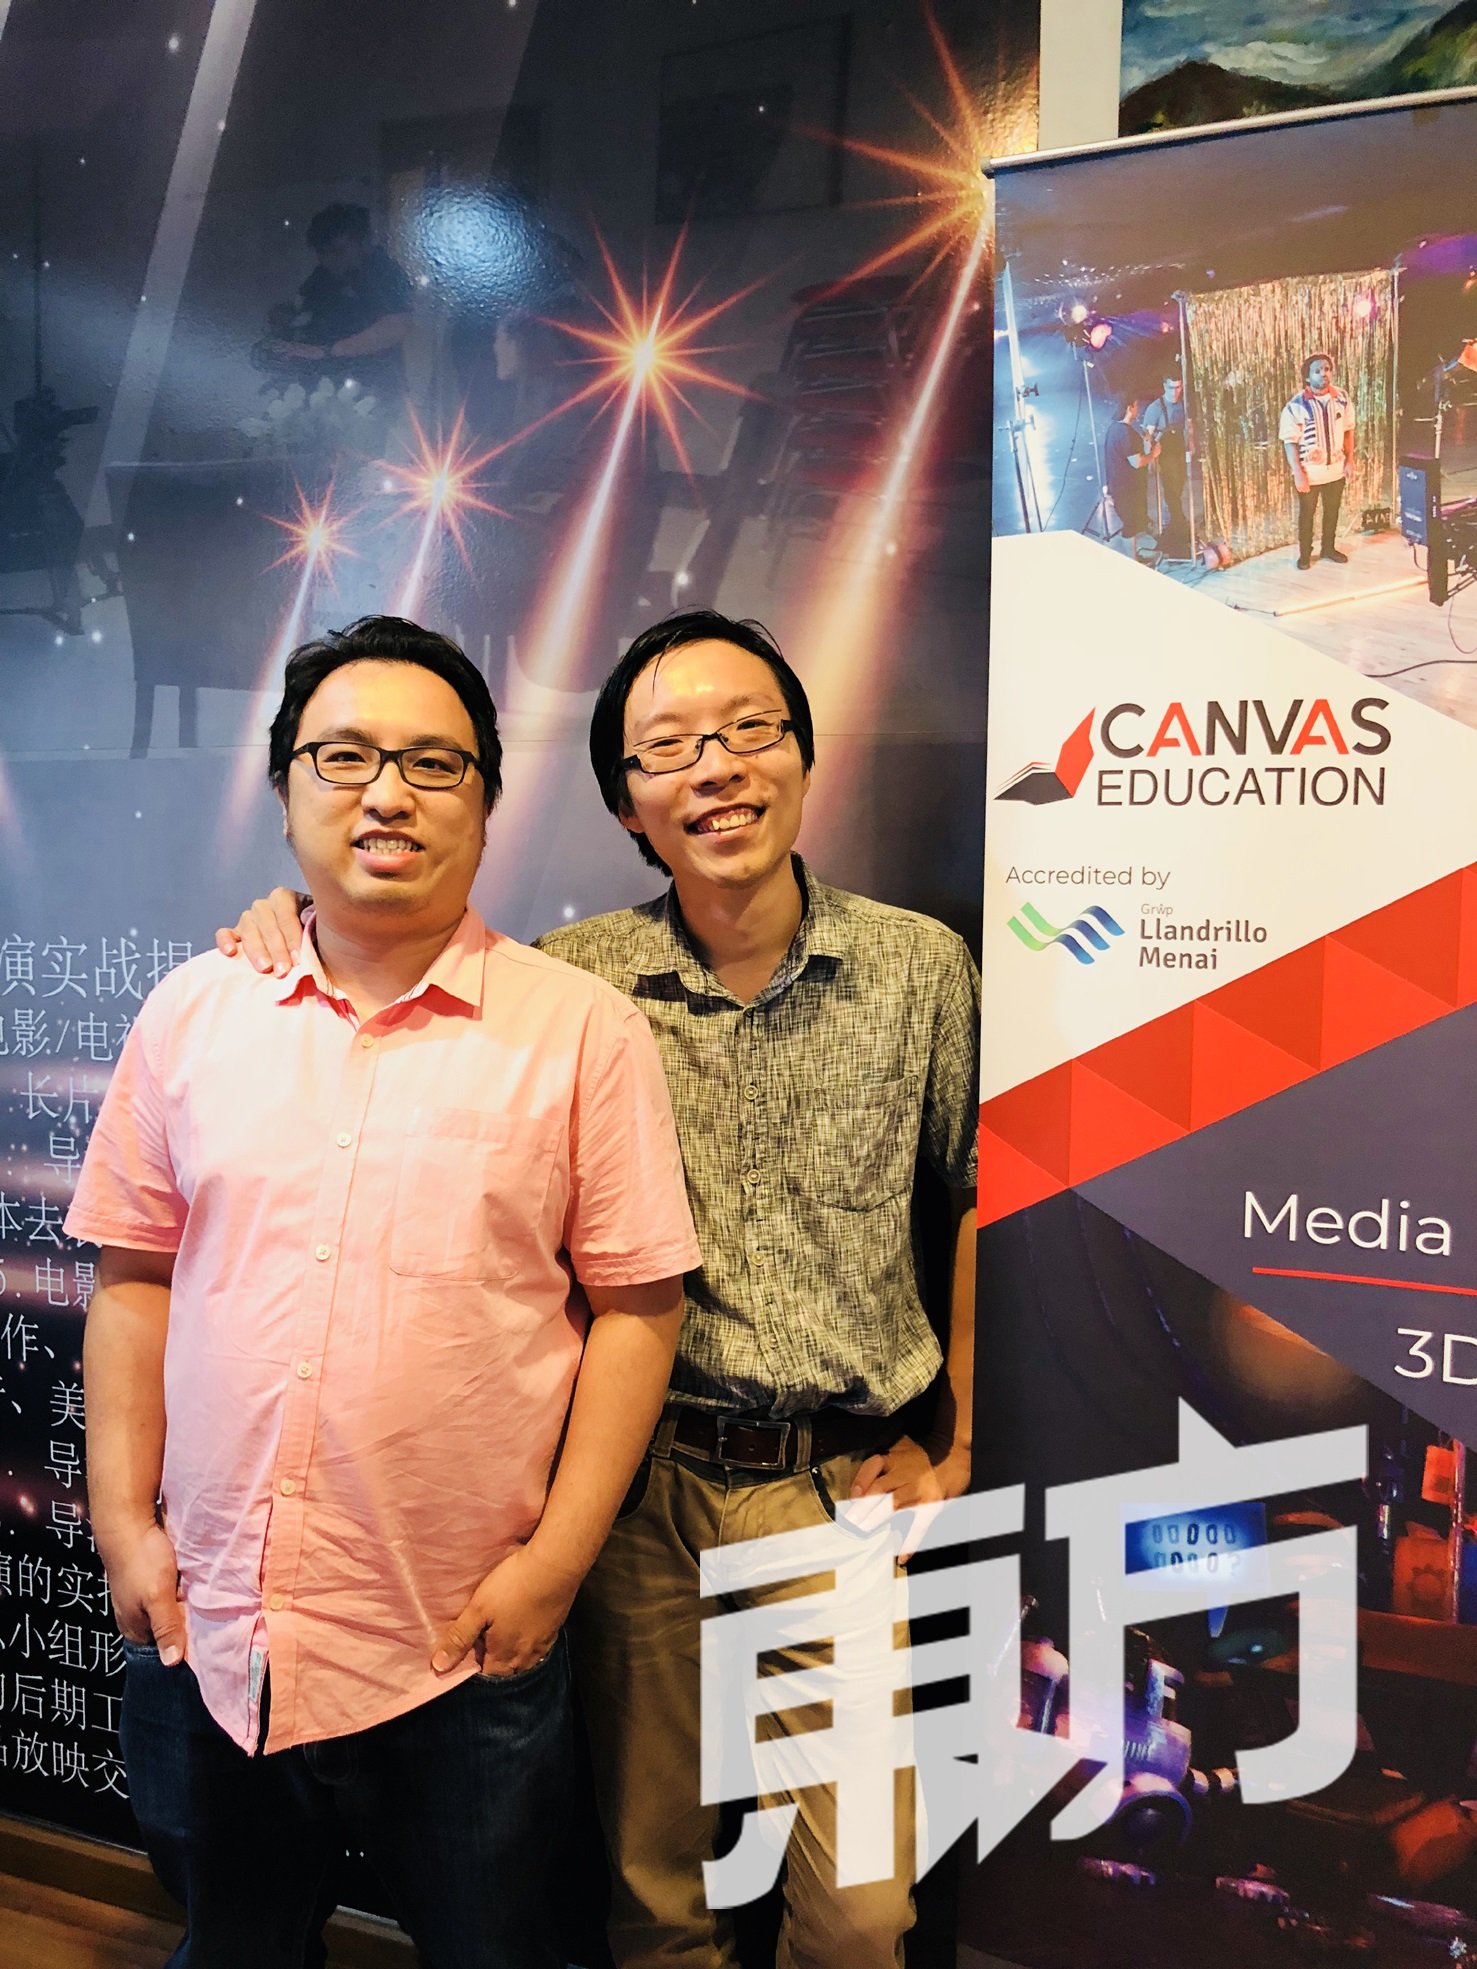 蔡斯汉(左)和黄德勇希望Canvas Education平台能让更多人有机会接触新时代所需的专业技术与知识。